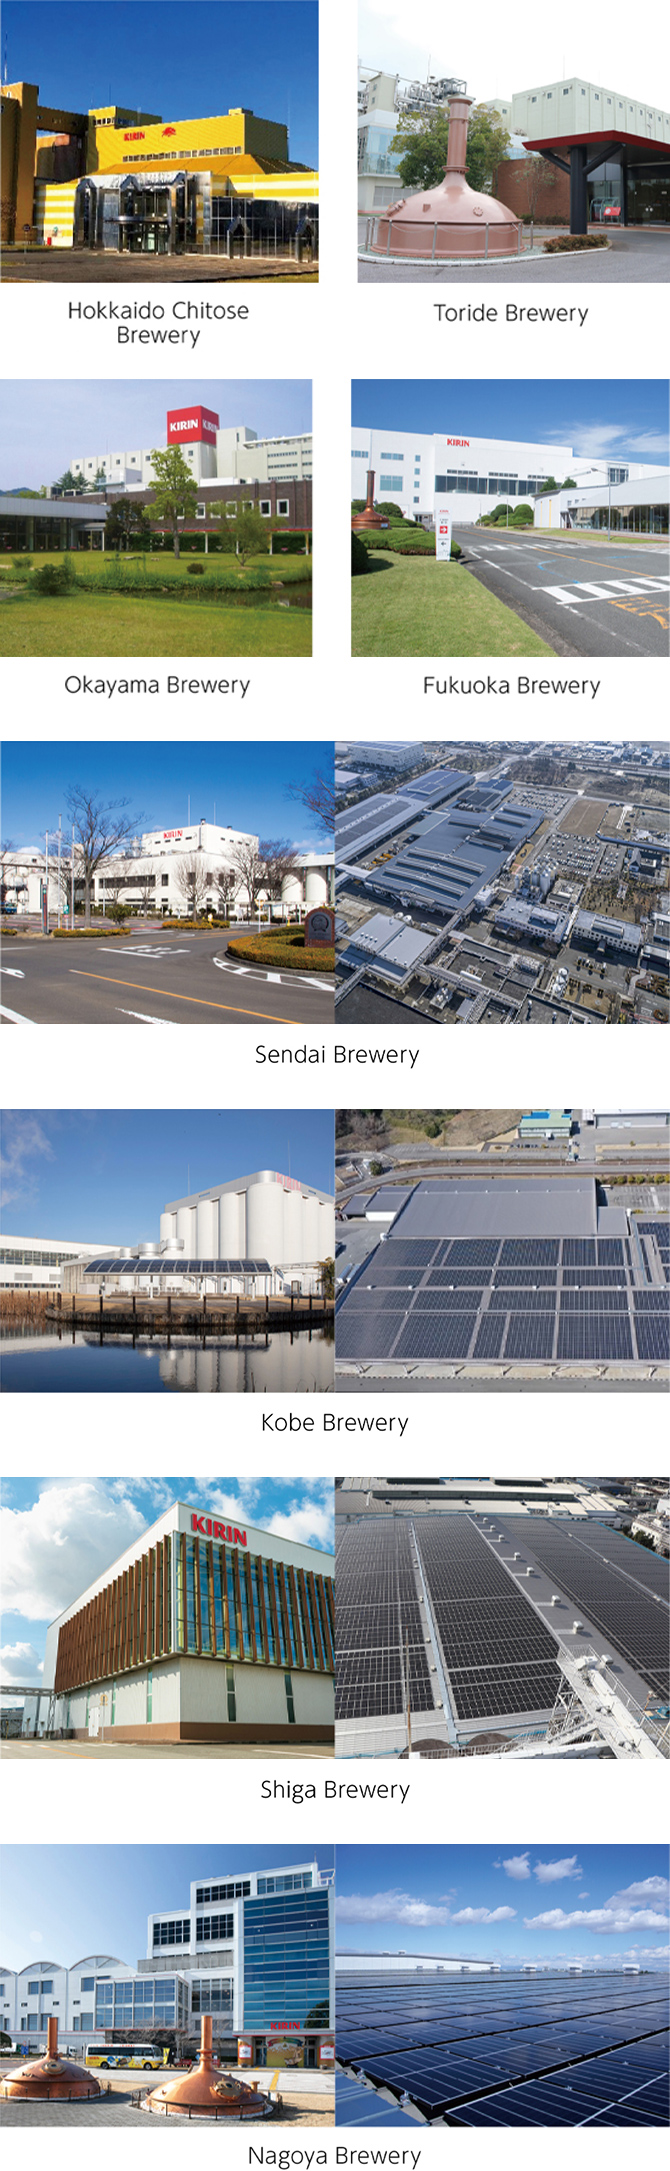 Image: Hokkaido Chitose Brewery, Toride Brewery, Okayama Brewery Fukuoka Brewery. Sendai Brewery, Kobe Brewery, Shiga Brewery, Nagoya Brewery